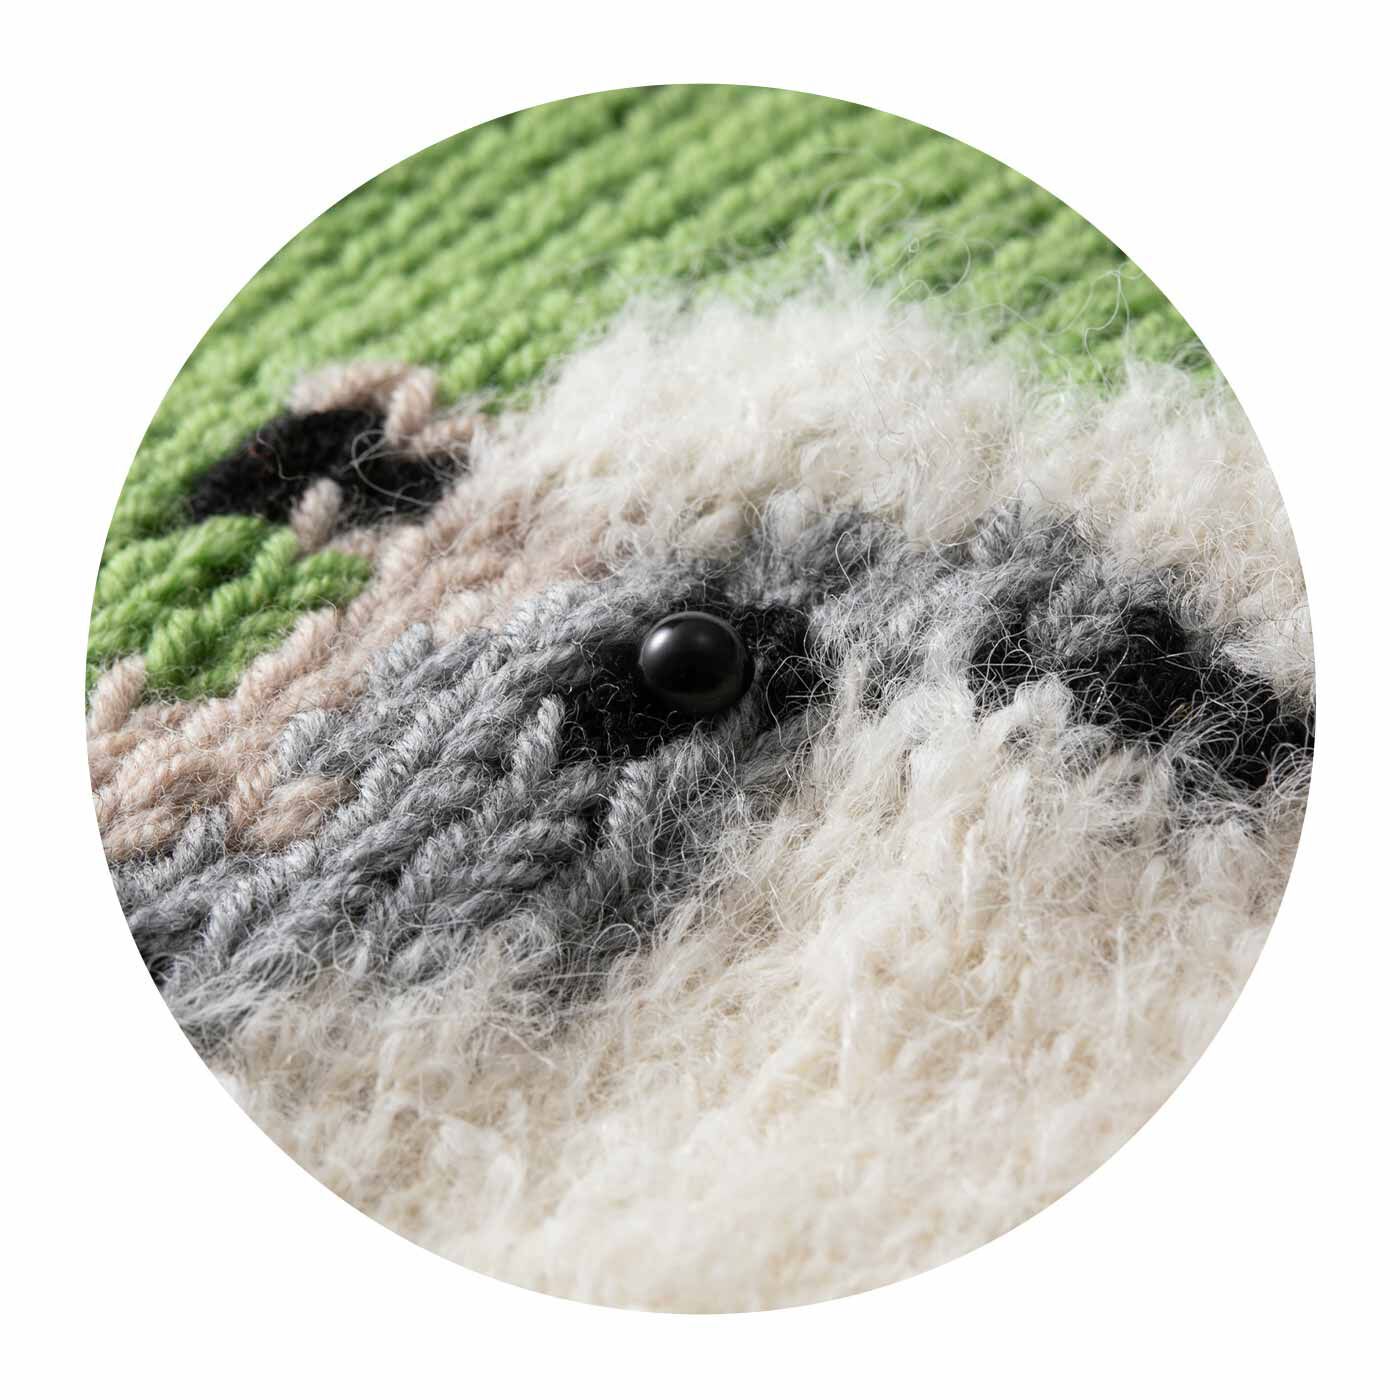 Couturier|思わずなでなでしたくなる ファンシーヤーンの編み込み動物バッグの会|ふわふわのファンシーヤーンで羊の毛並みを再現。ボタンの瞳がつぶらでかわいい。